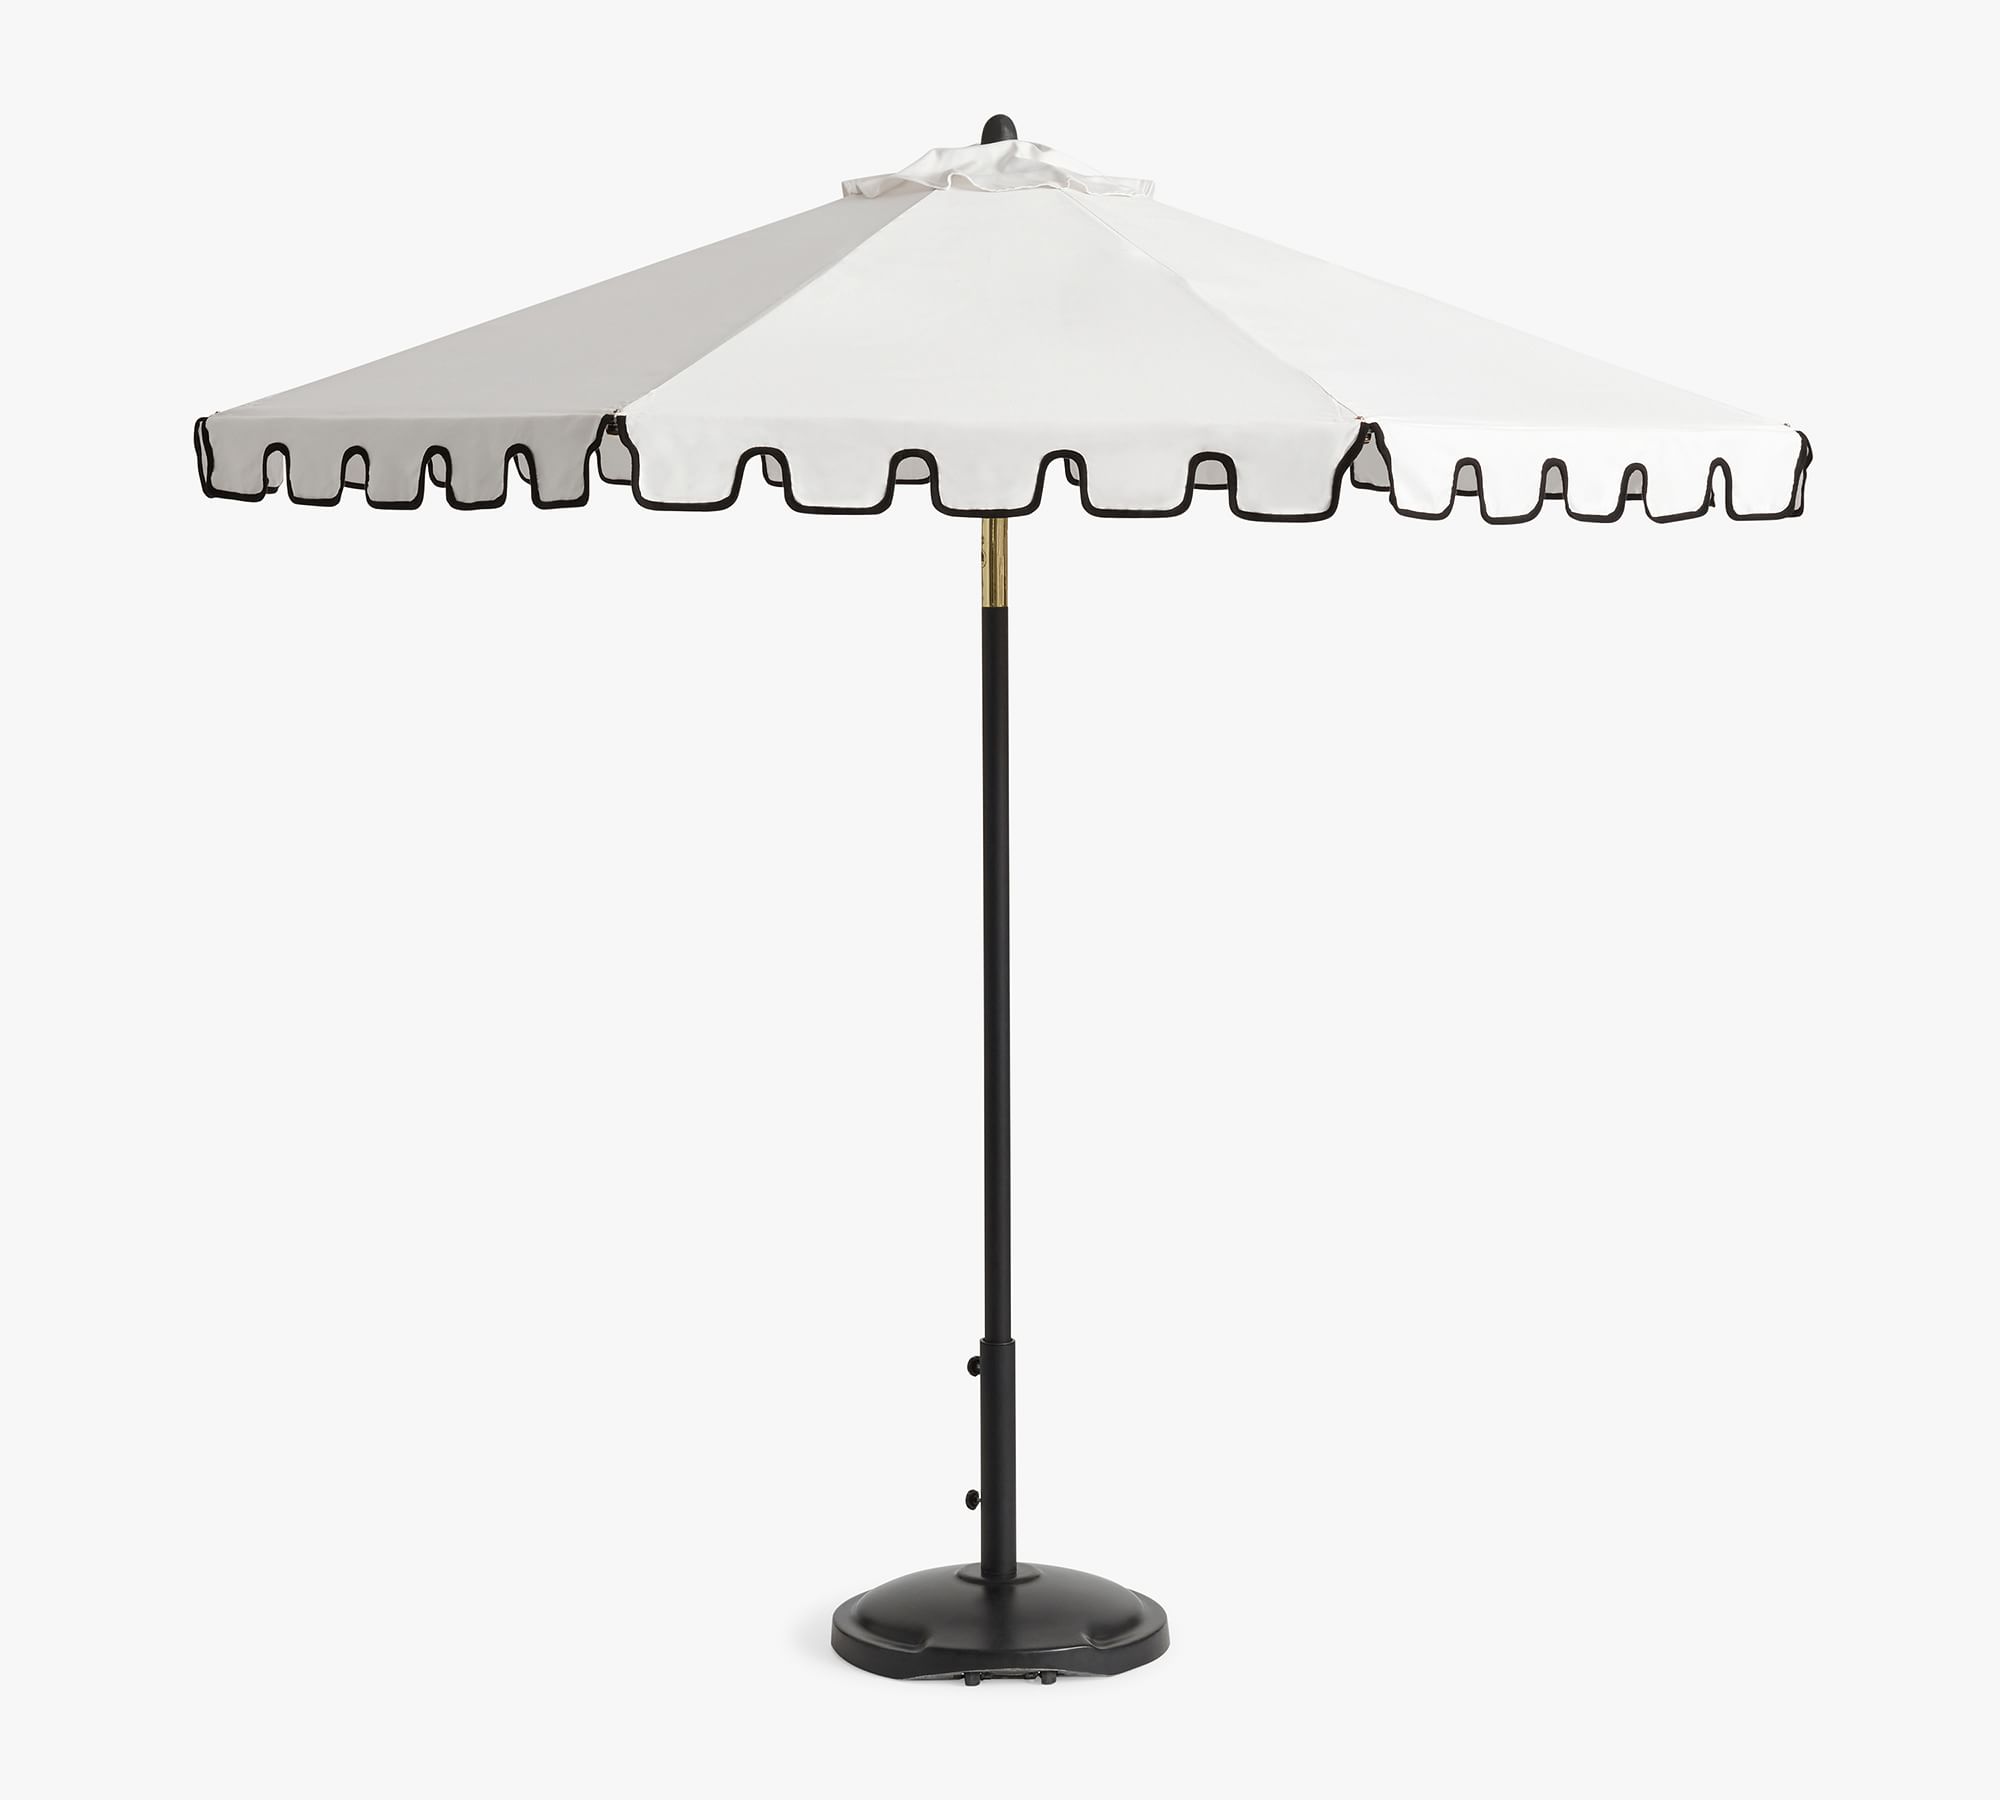 Premium 9' Round Portofino Patio Umbrella – Rustproof Aluminum Tilt Frame